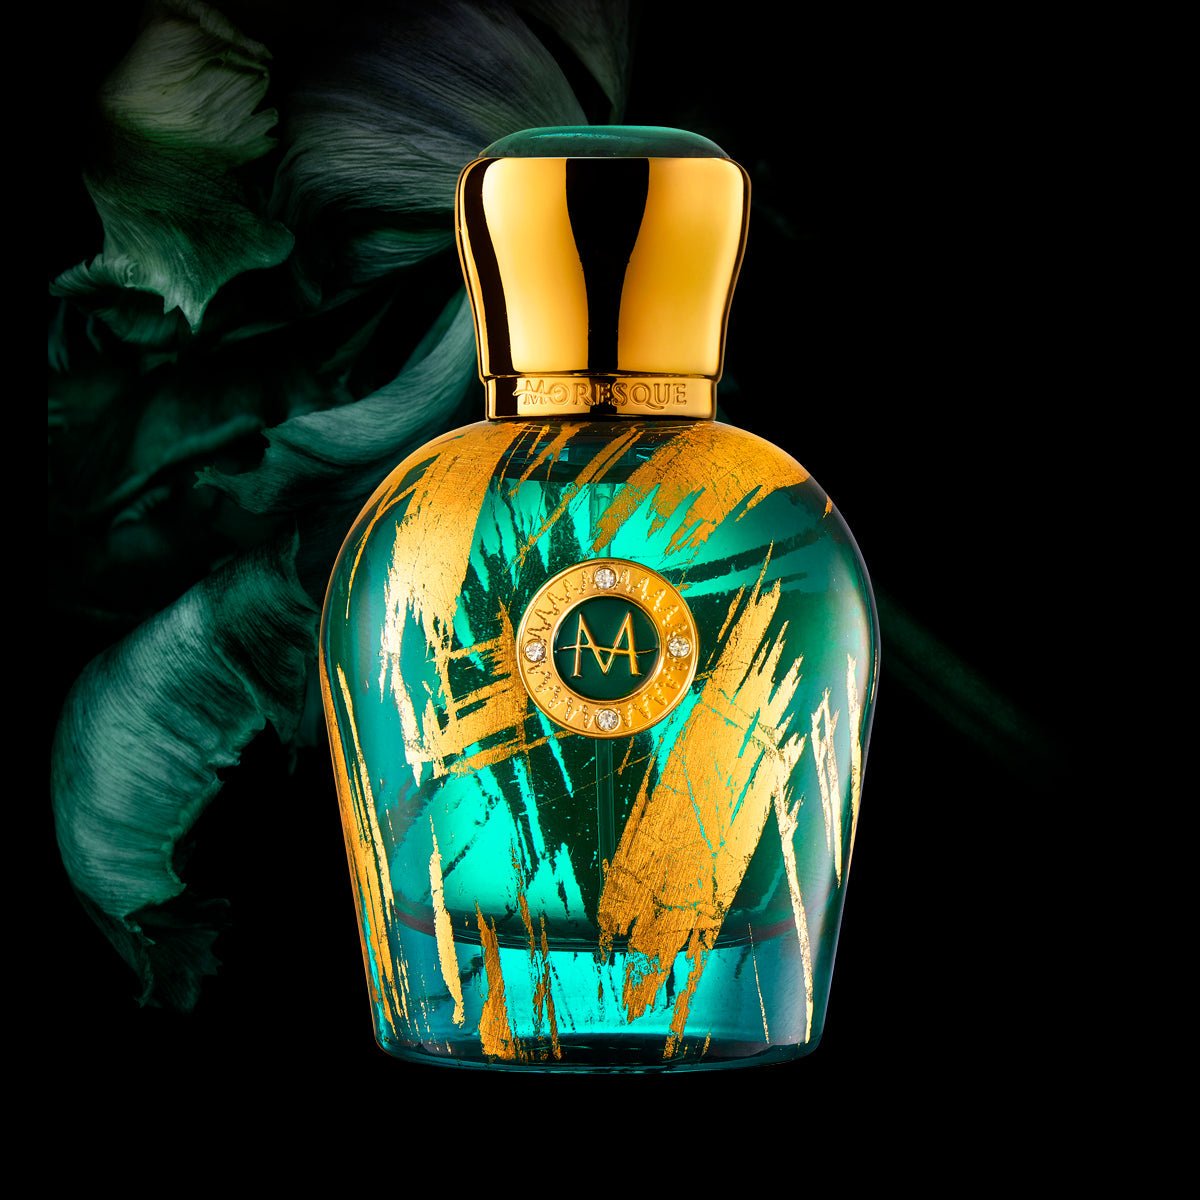 Moresque Parfums Fiore Di Portofino Perfume & Cologne 1.7 oz/50 ml ScentRabbit